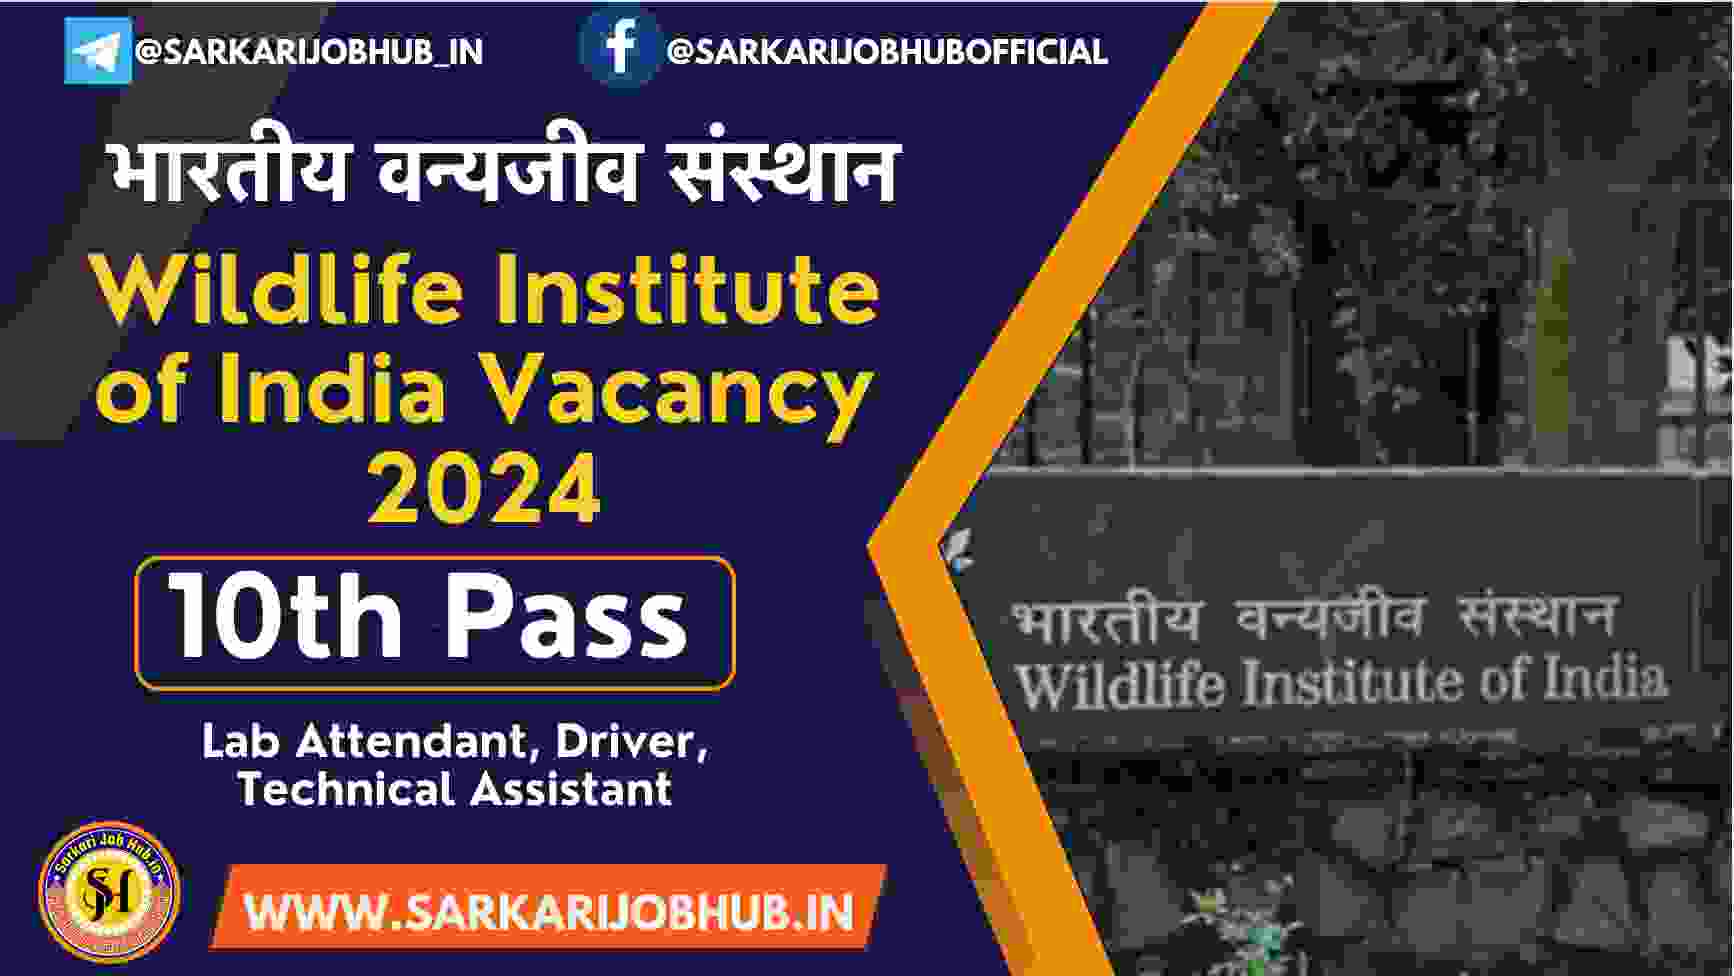 Wildlife Institute of India Recruitment 2024